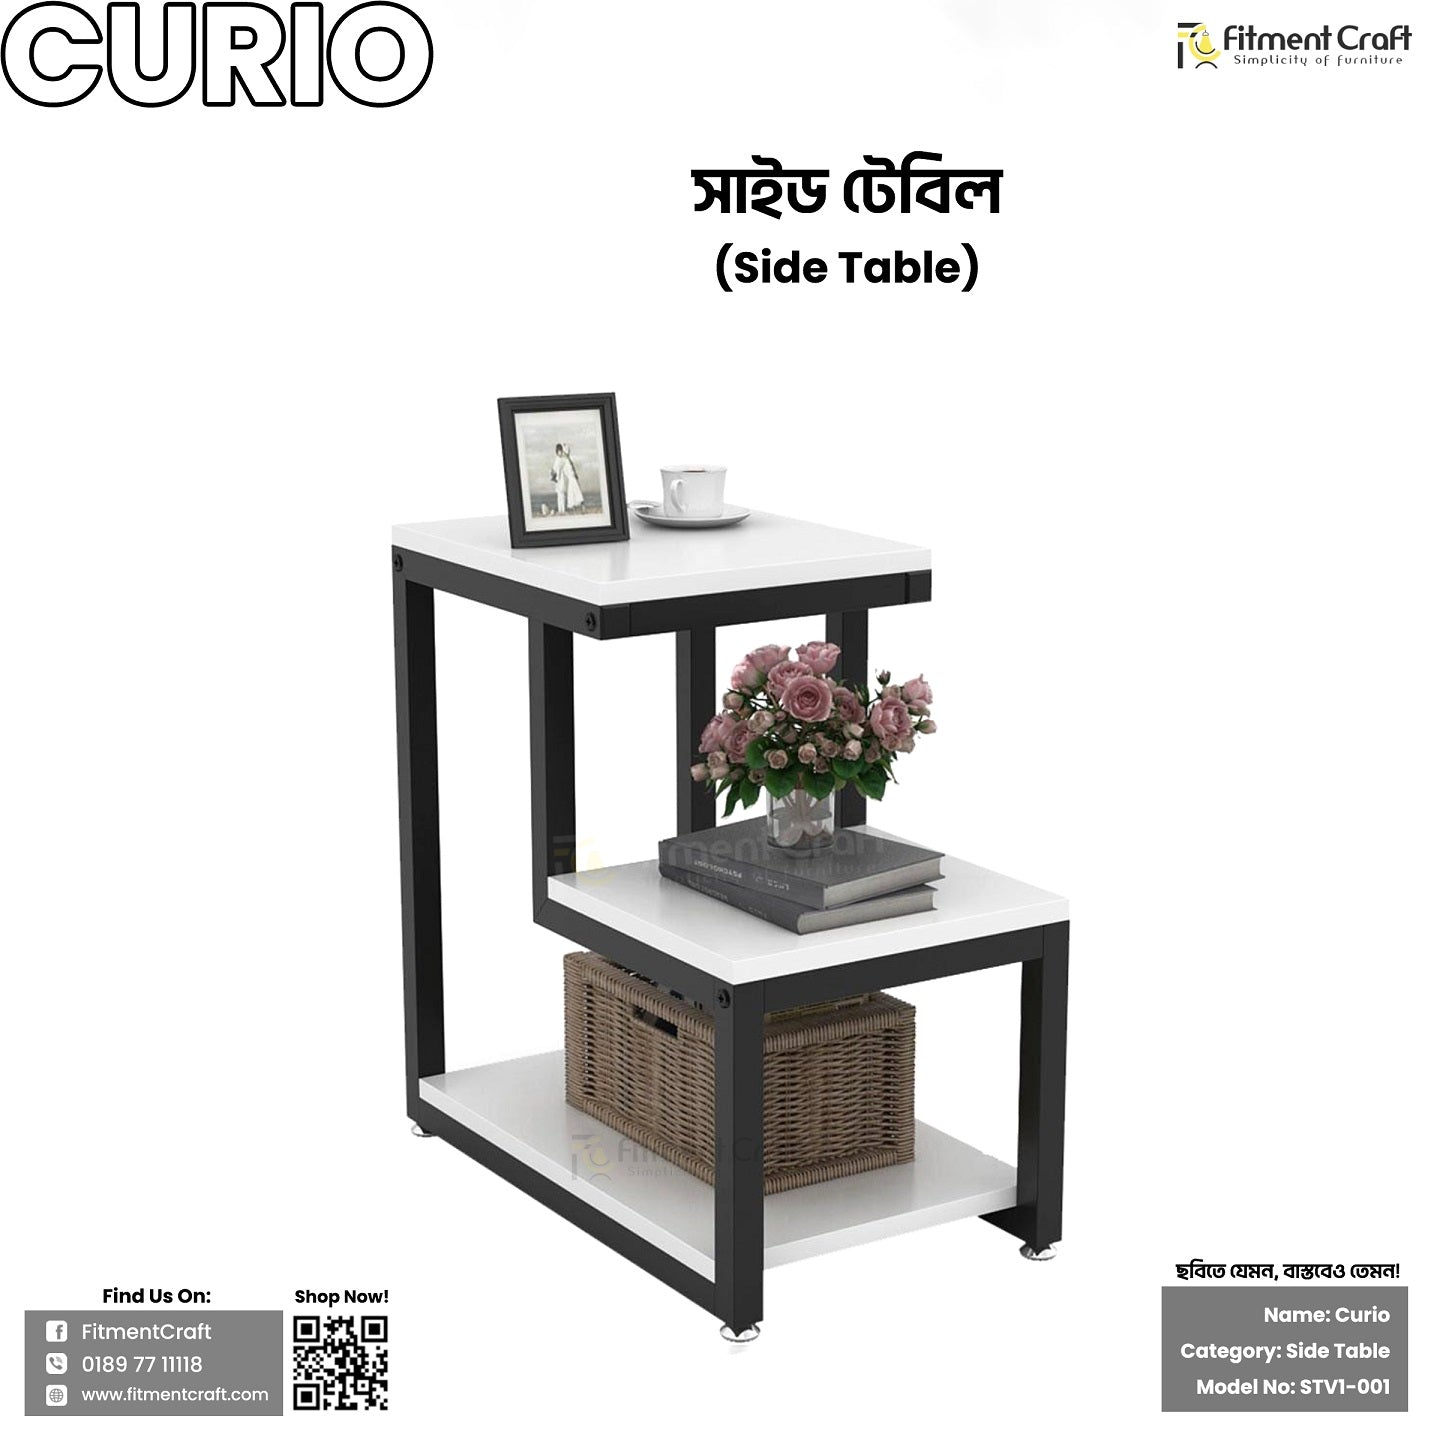 Curio - Side Table | STV1-001